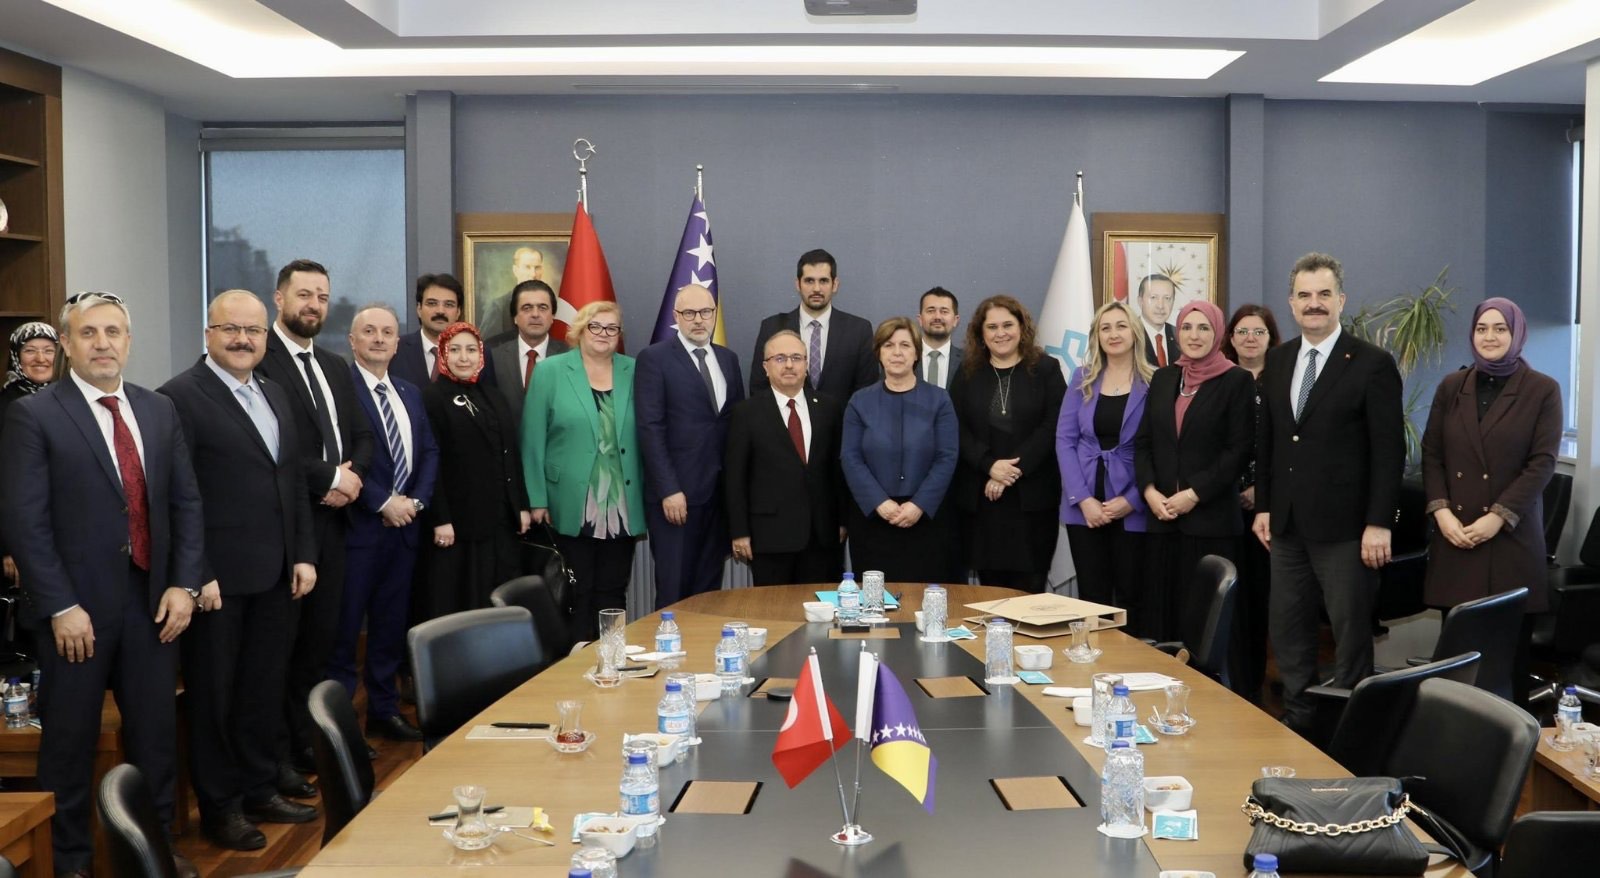 Ministar Mirza Mušija boravi u studijskoj posjeti Turskoj: Obrazovna saradnja između Turske i Bosne i Hercegovine